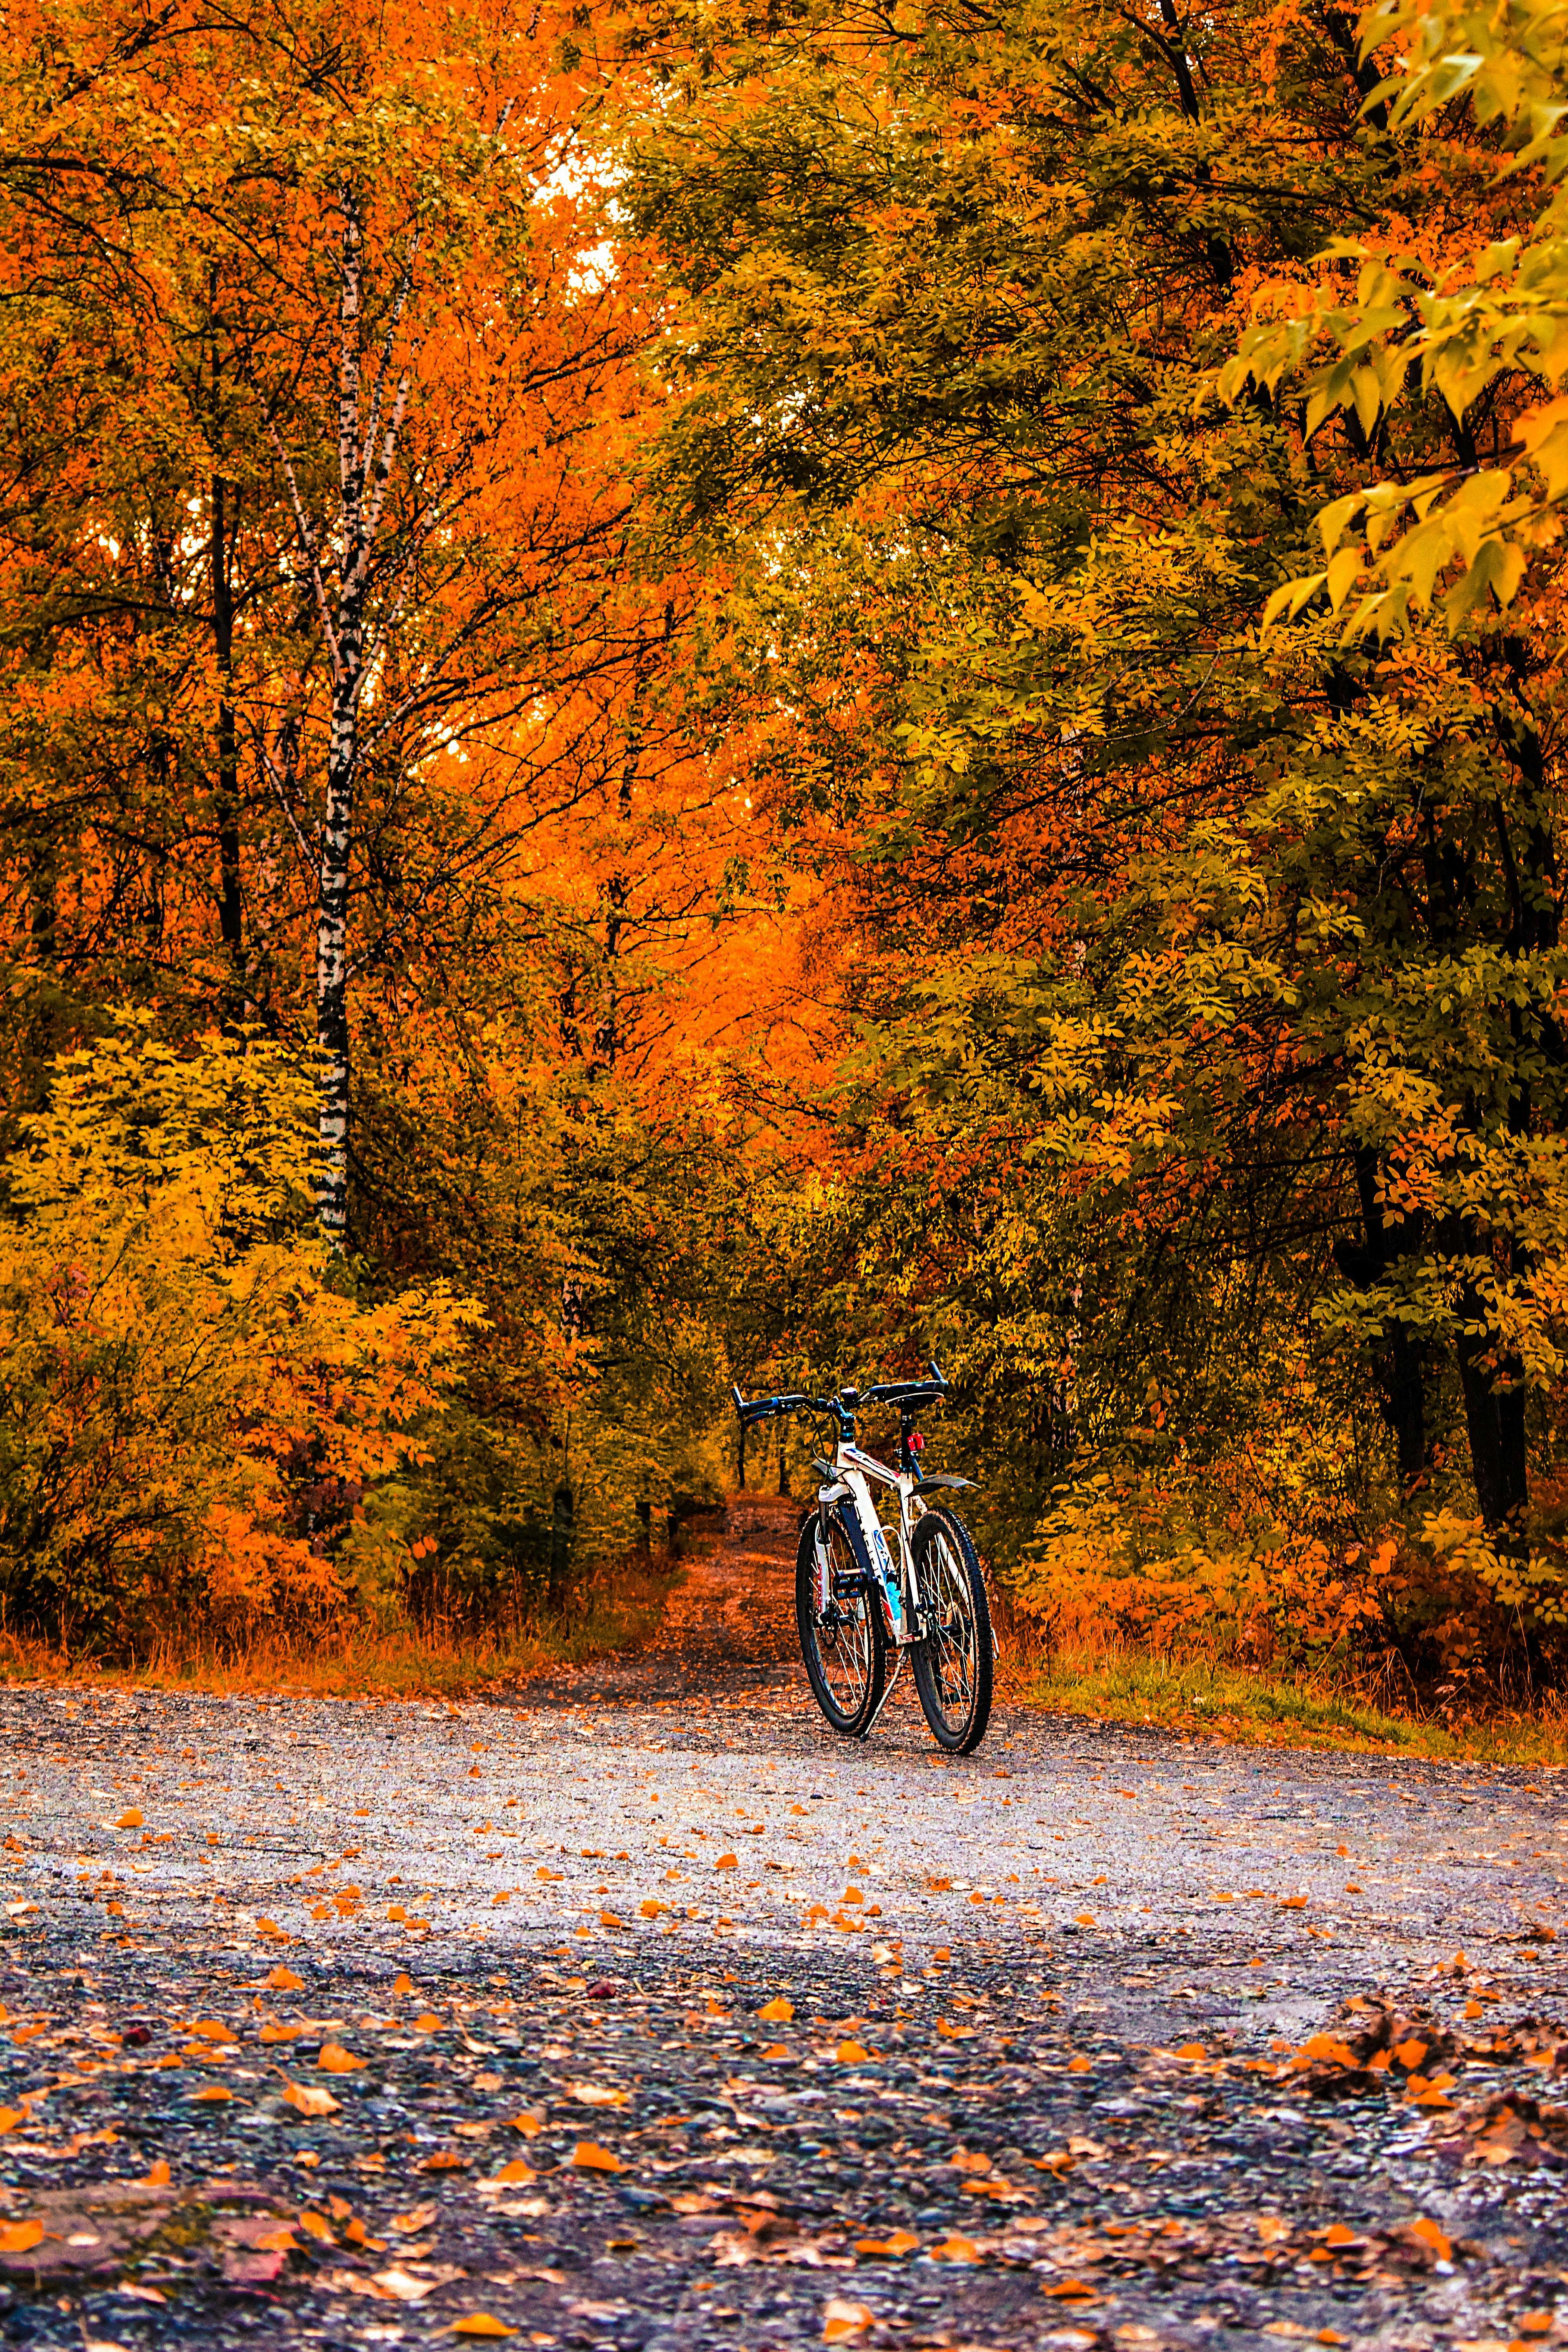 Hai chiếc xe đạp được đặt kết hợp trong khu rừng xanh tươi sẽ tạo ra một bức ảnh tuyệt đẹp, đầy hoài niệm và cảm xúc. Hãy cùng xem những bức ảnh tuyệt vời với một chiếc xe đạp trong khung cảnh thiên nhiên đầy xanh tươi!